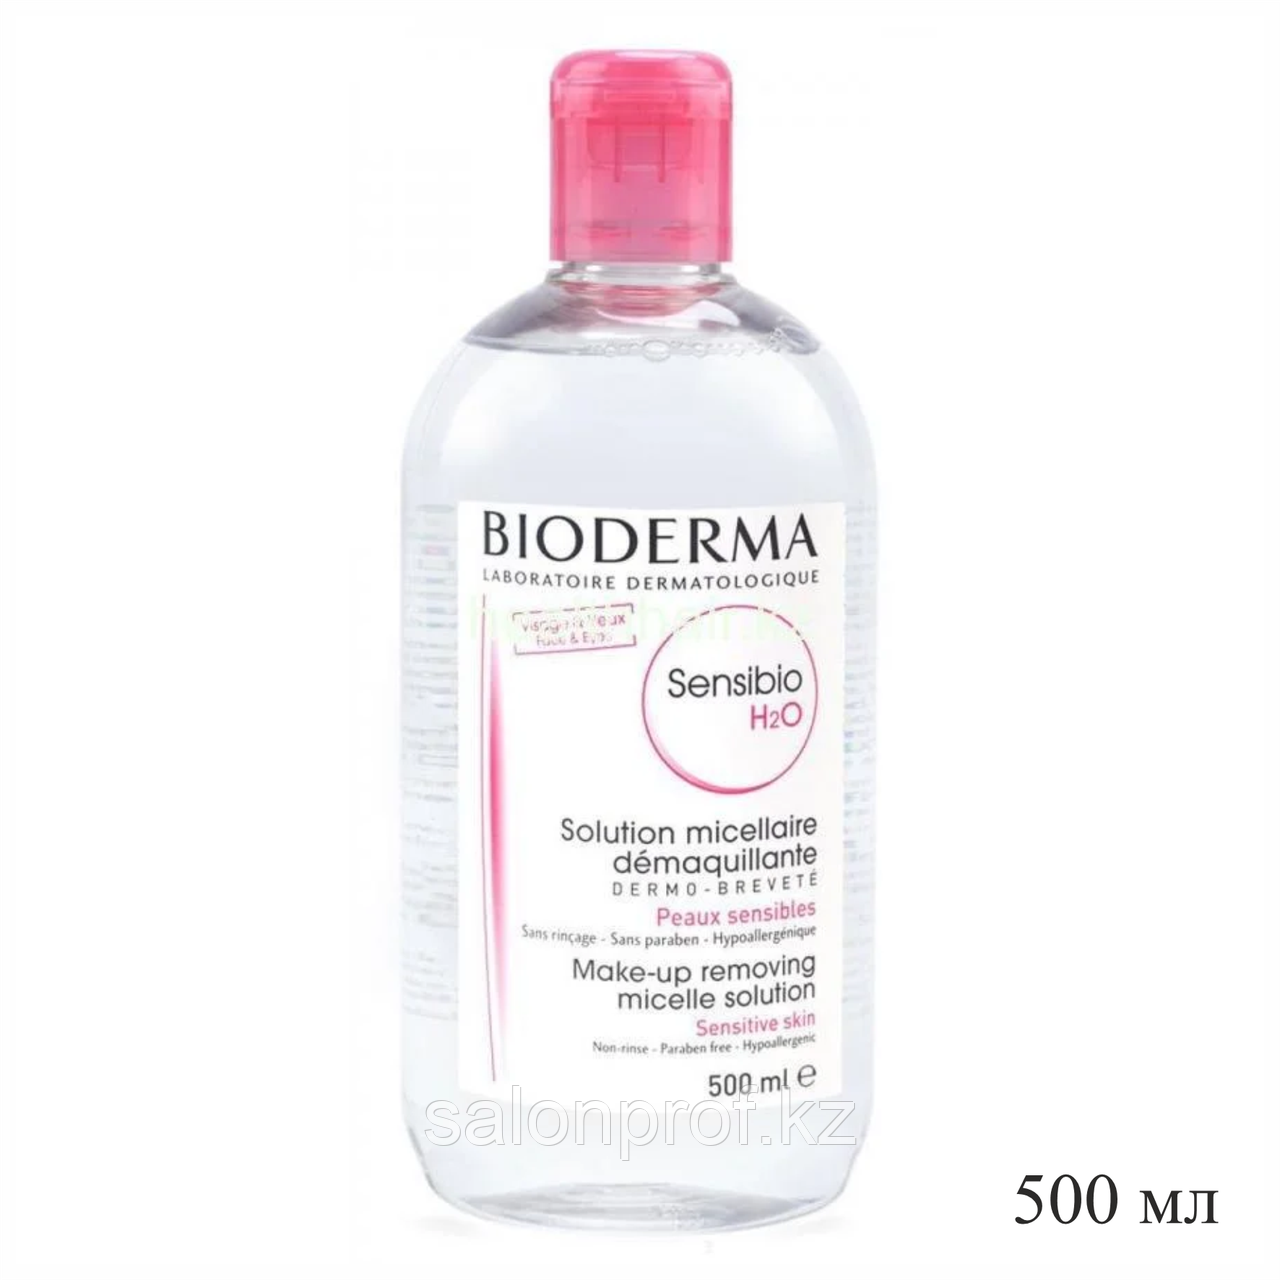 Мицелловый раствор Bioderma Sensibio для удаления макияжа Мягкое очищение 500 мл №35571